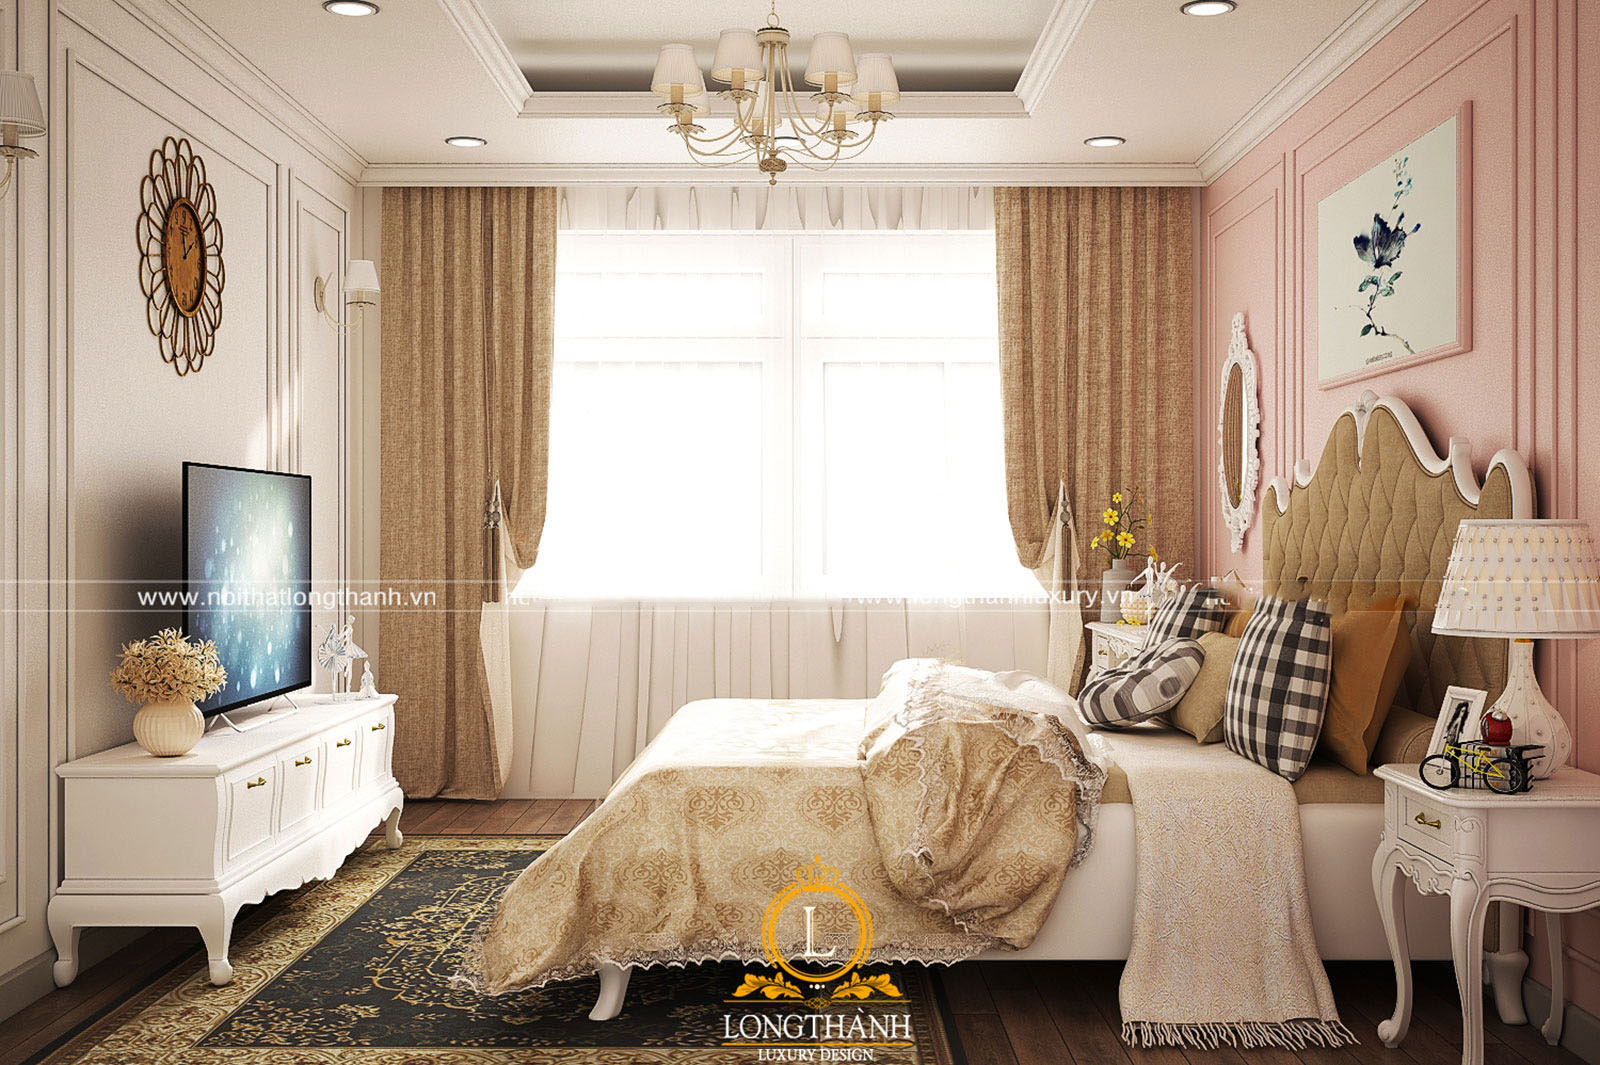 Thiết kế phòng ngủ cao cấp hiện đại với vẻ đẹp lung linh mềm mại